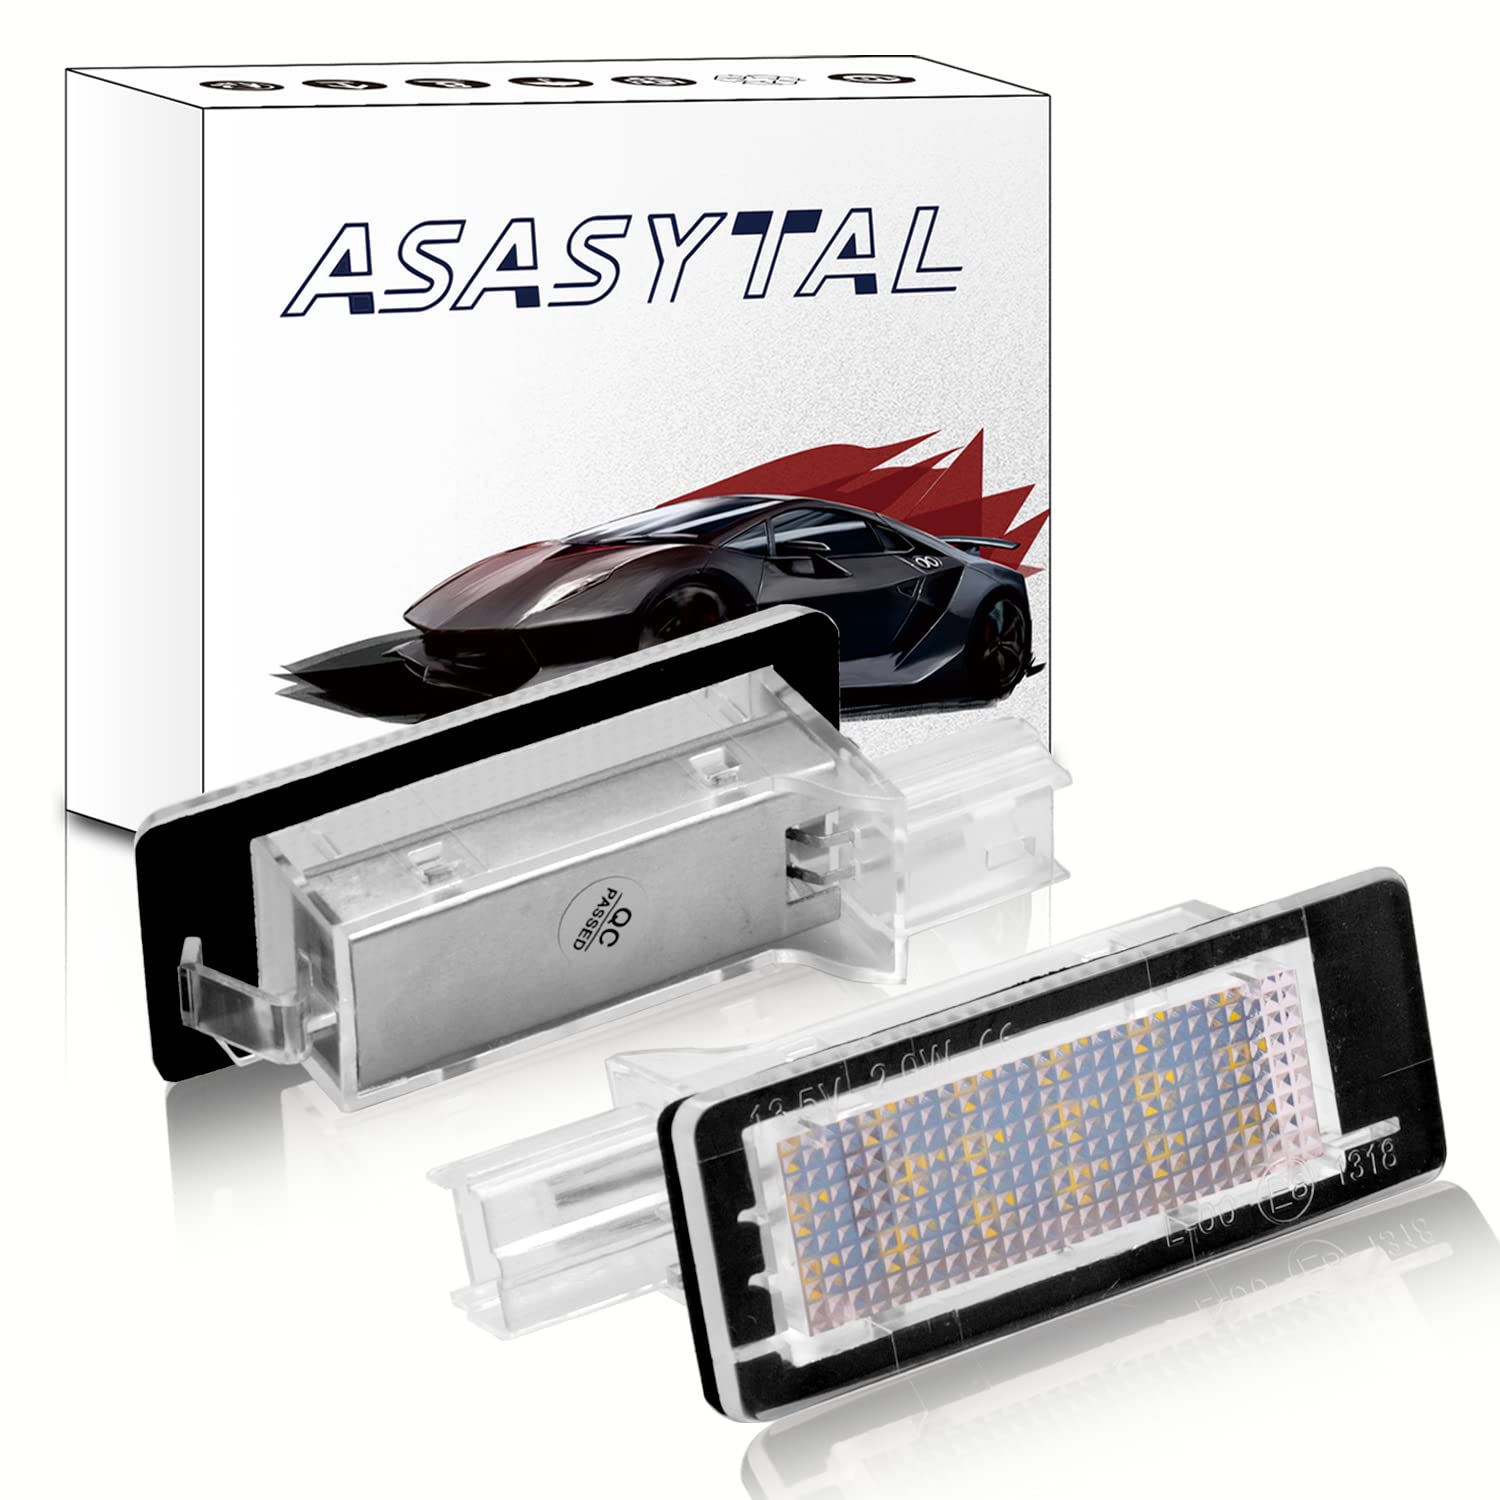 Asasytal LED Kennzeichenbeleuchtung 6000K Bright Weiß Lampen Leuchtmittel, Hellweiß fehlerfrei Kompatibel mit Renault Cap-tur J5 Es-pace MK4 Flu-ence Sce-nic MK2/3 MPV Grand Sce-nic MK2/3, 2 Stücke von Asasytal